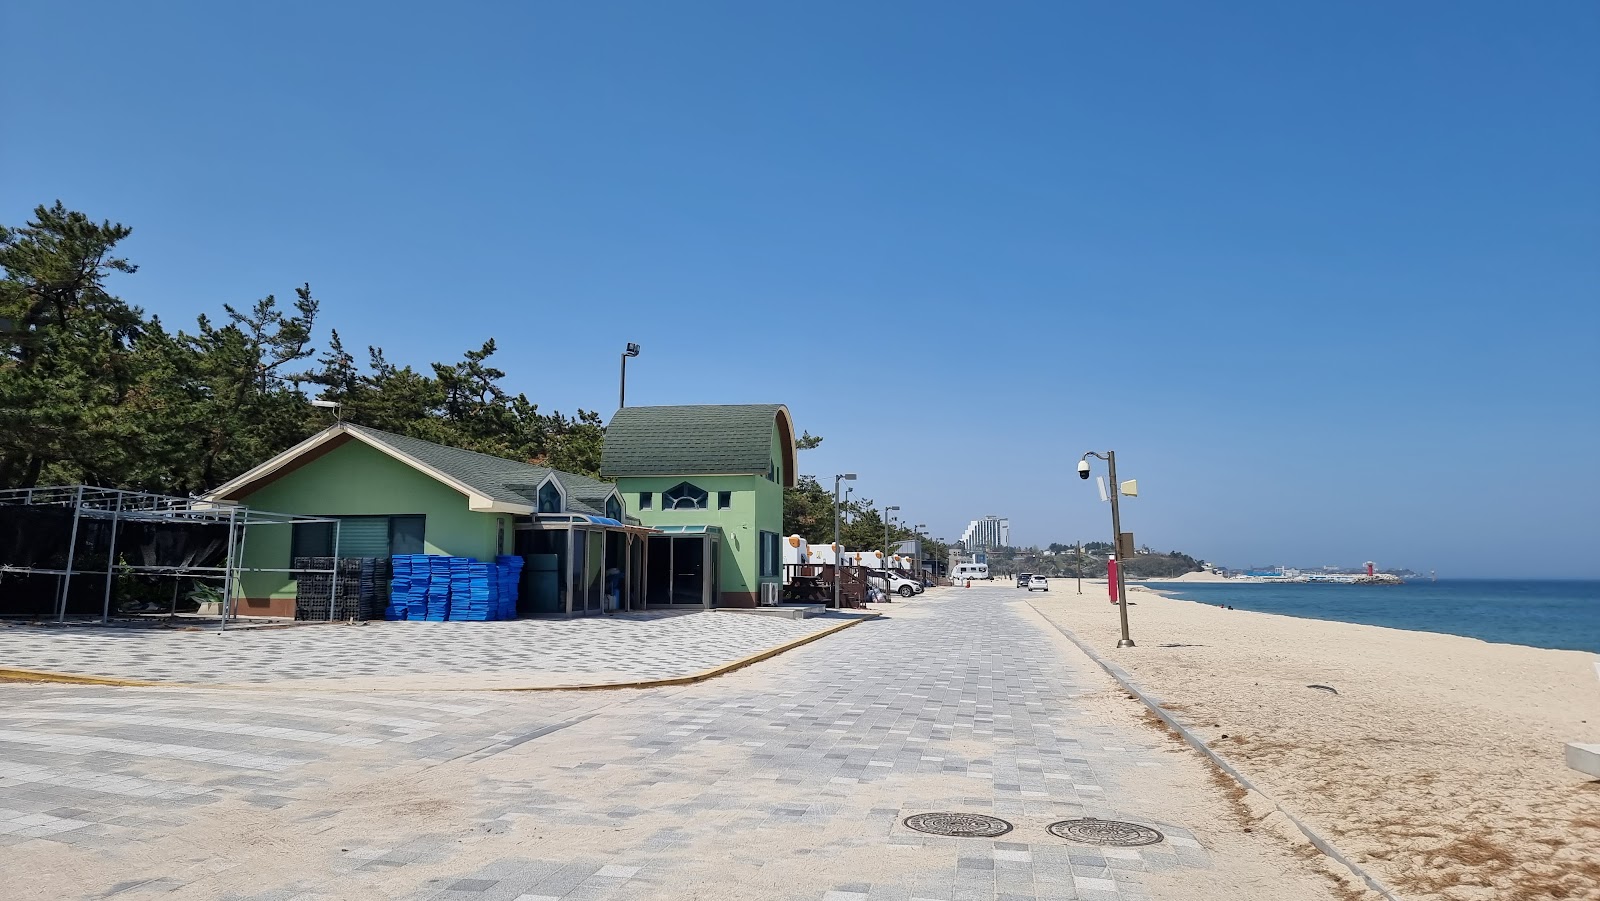 Fotografie cu Yeongok Beach - locul popular printre cunoscătorii de relaxare